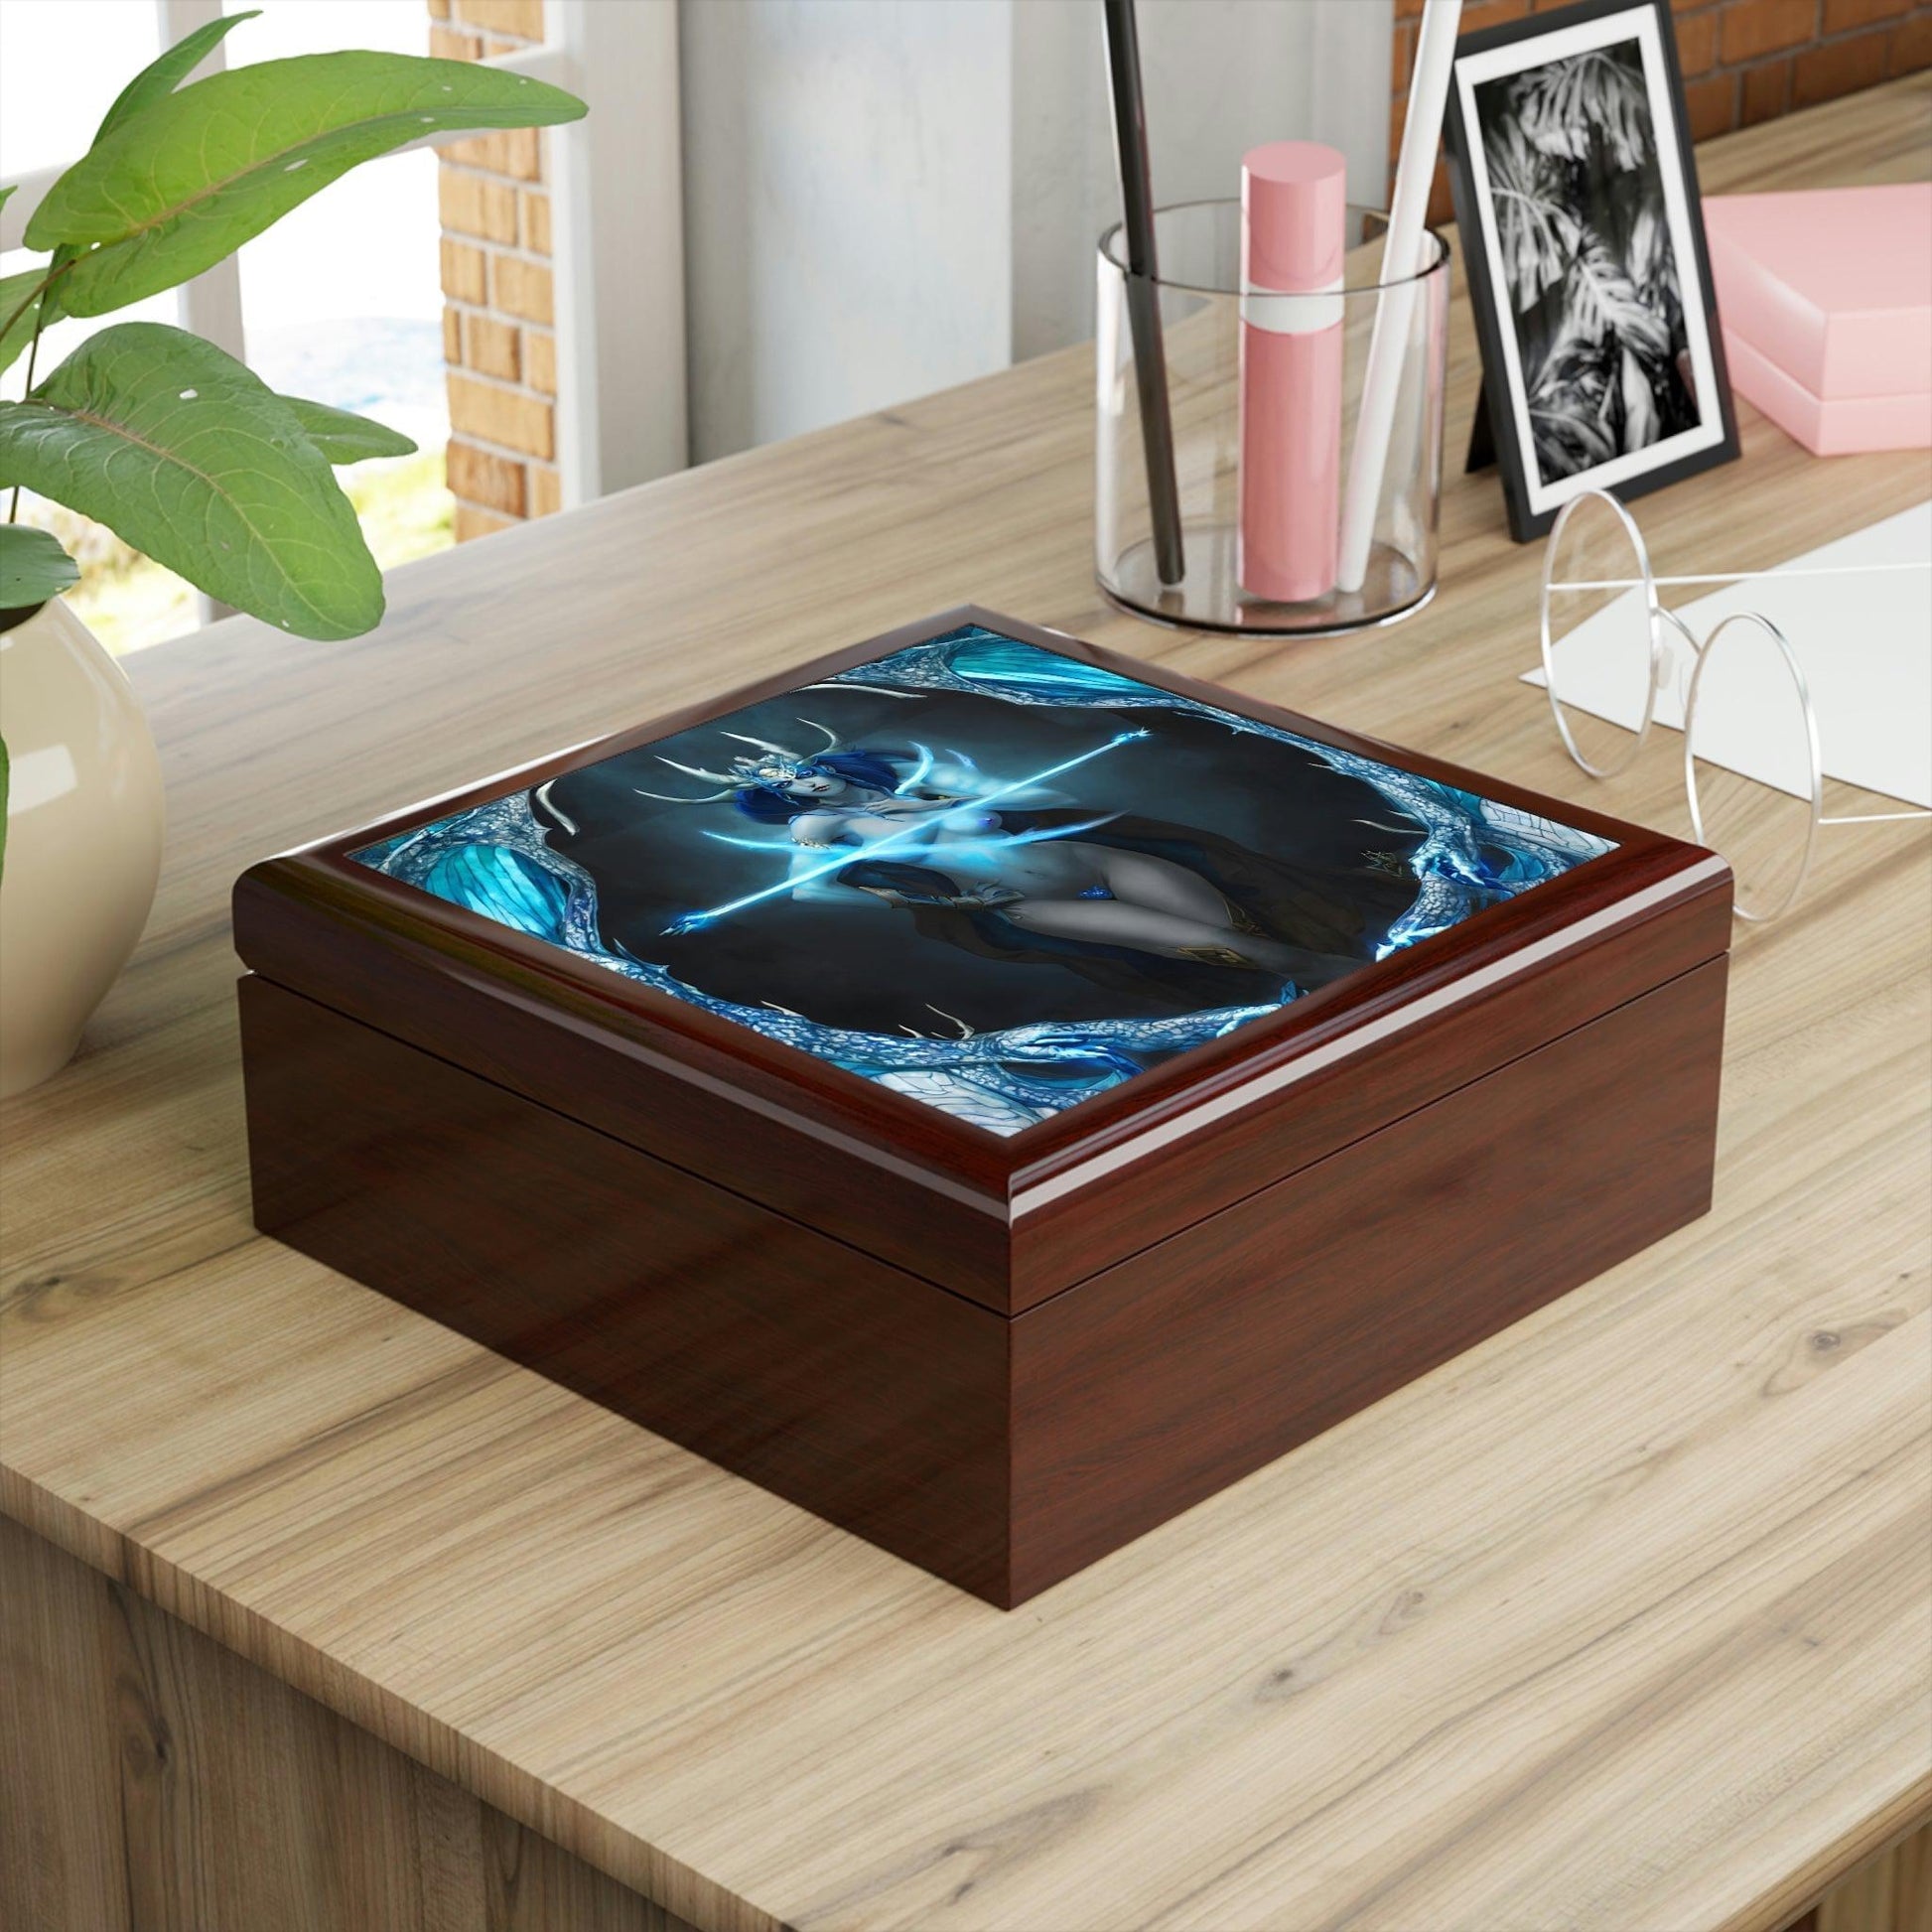 Үнэт эдлэлийн хайрцагт сахиус, бөгжөө хадгалаарай - Abraxas Amulets ® Magic ♾️ Talismans ♾️ Авшиг